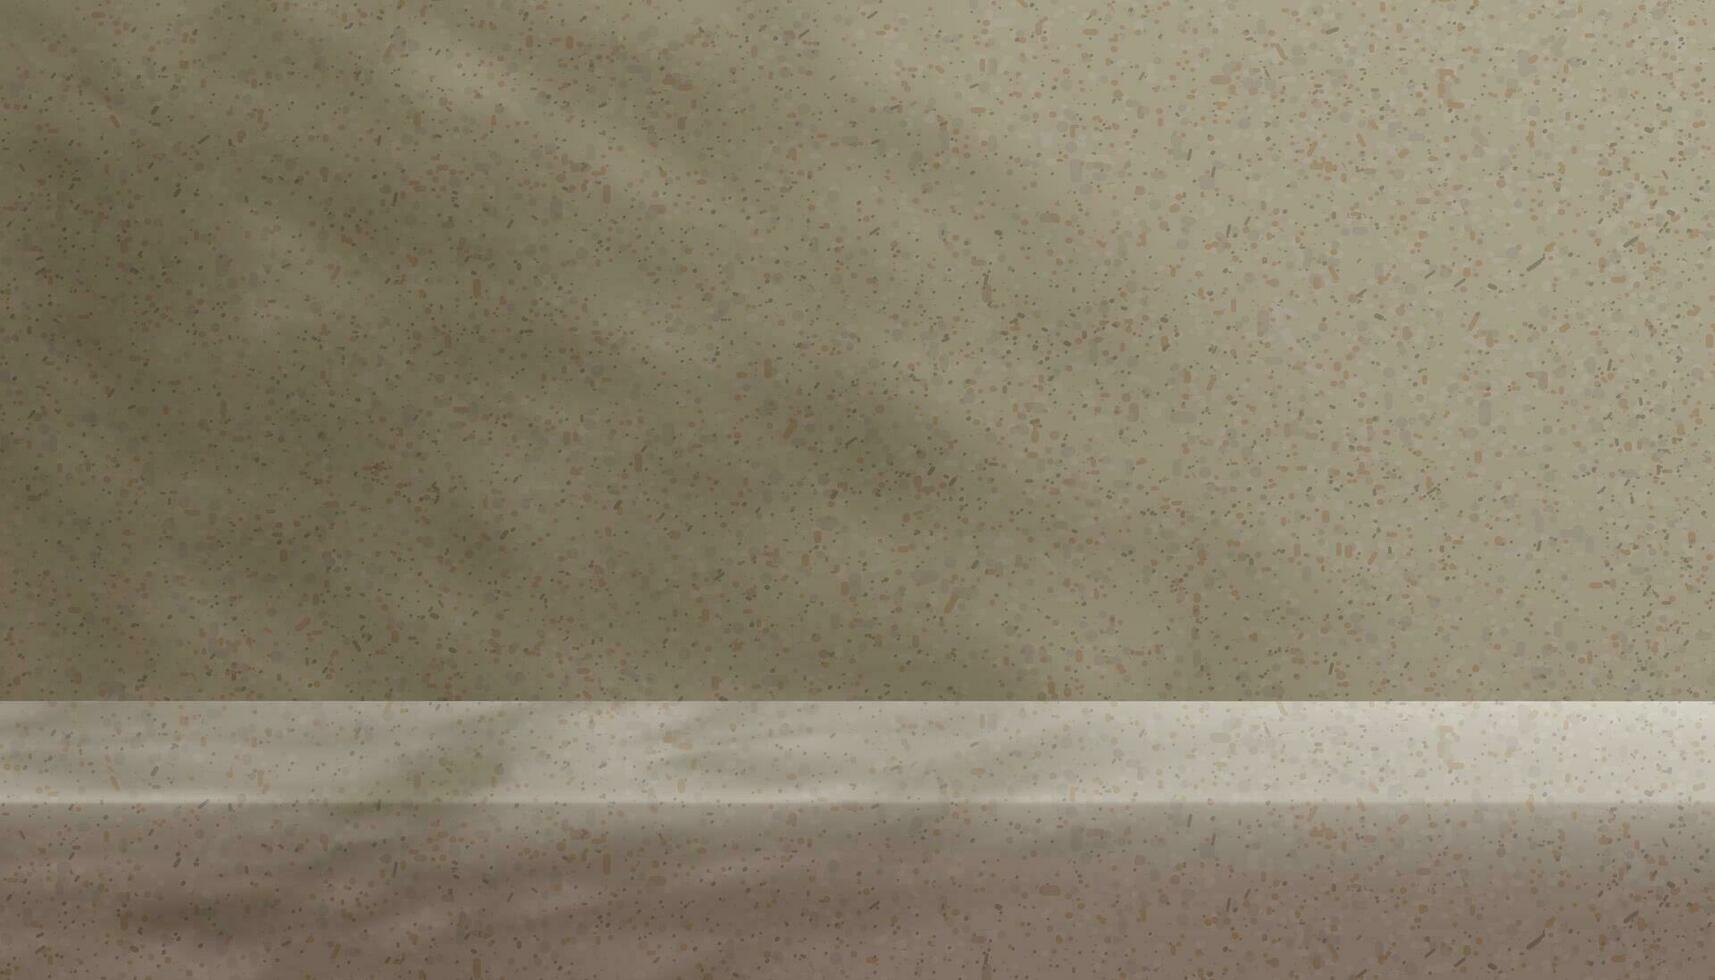 studio sfondo Schermo con ombra le foglie su terrazzo marmo parete stanza, vuota galleria con luce del sole su granito piano, concetto per cosmetico Prodotto presentazione, vendita, online negozio nel Autunno stagione vettore